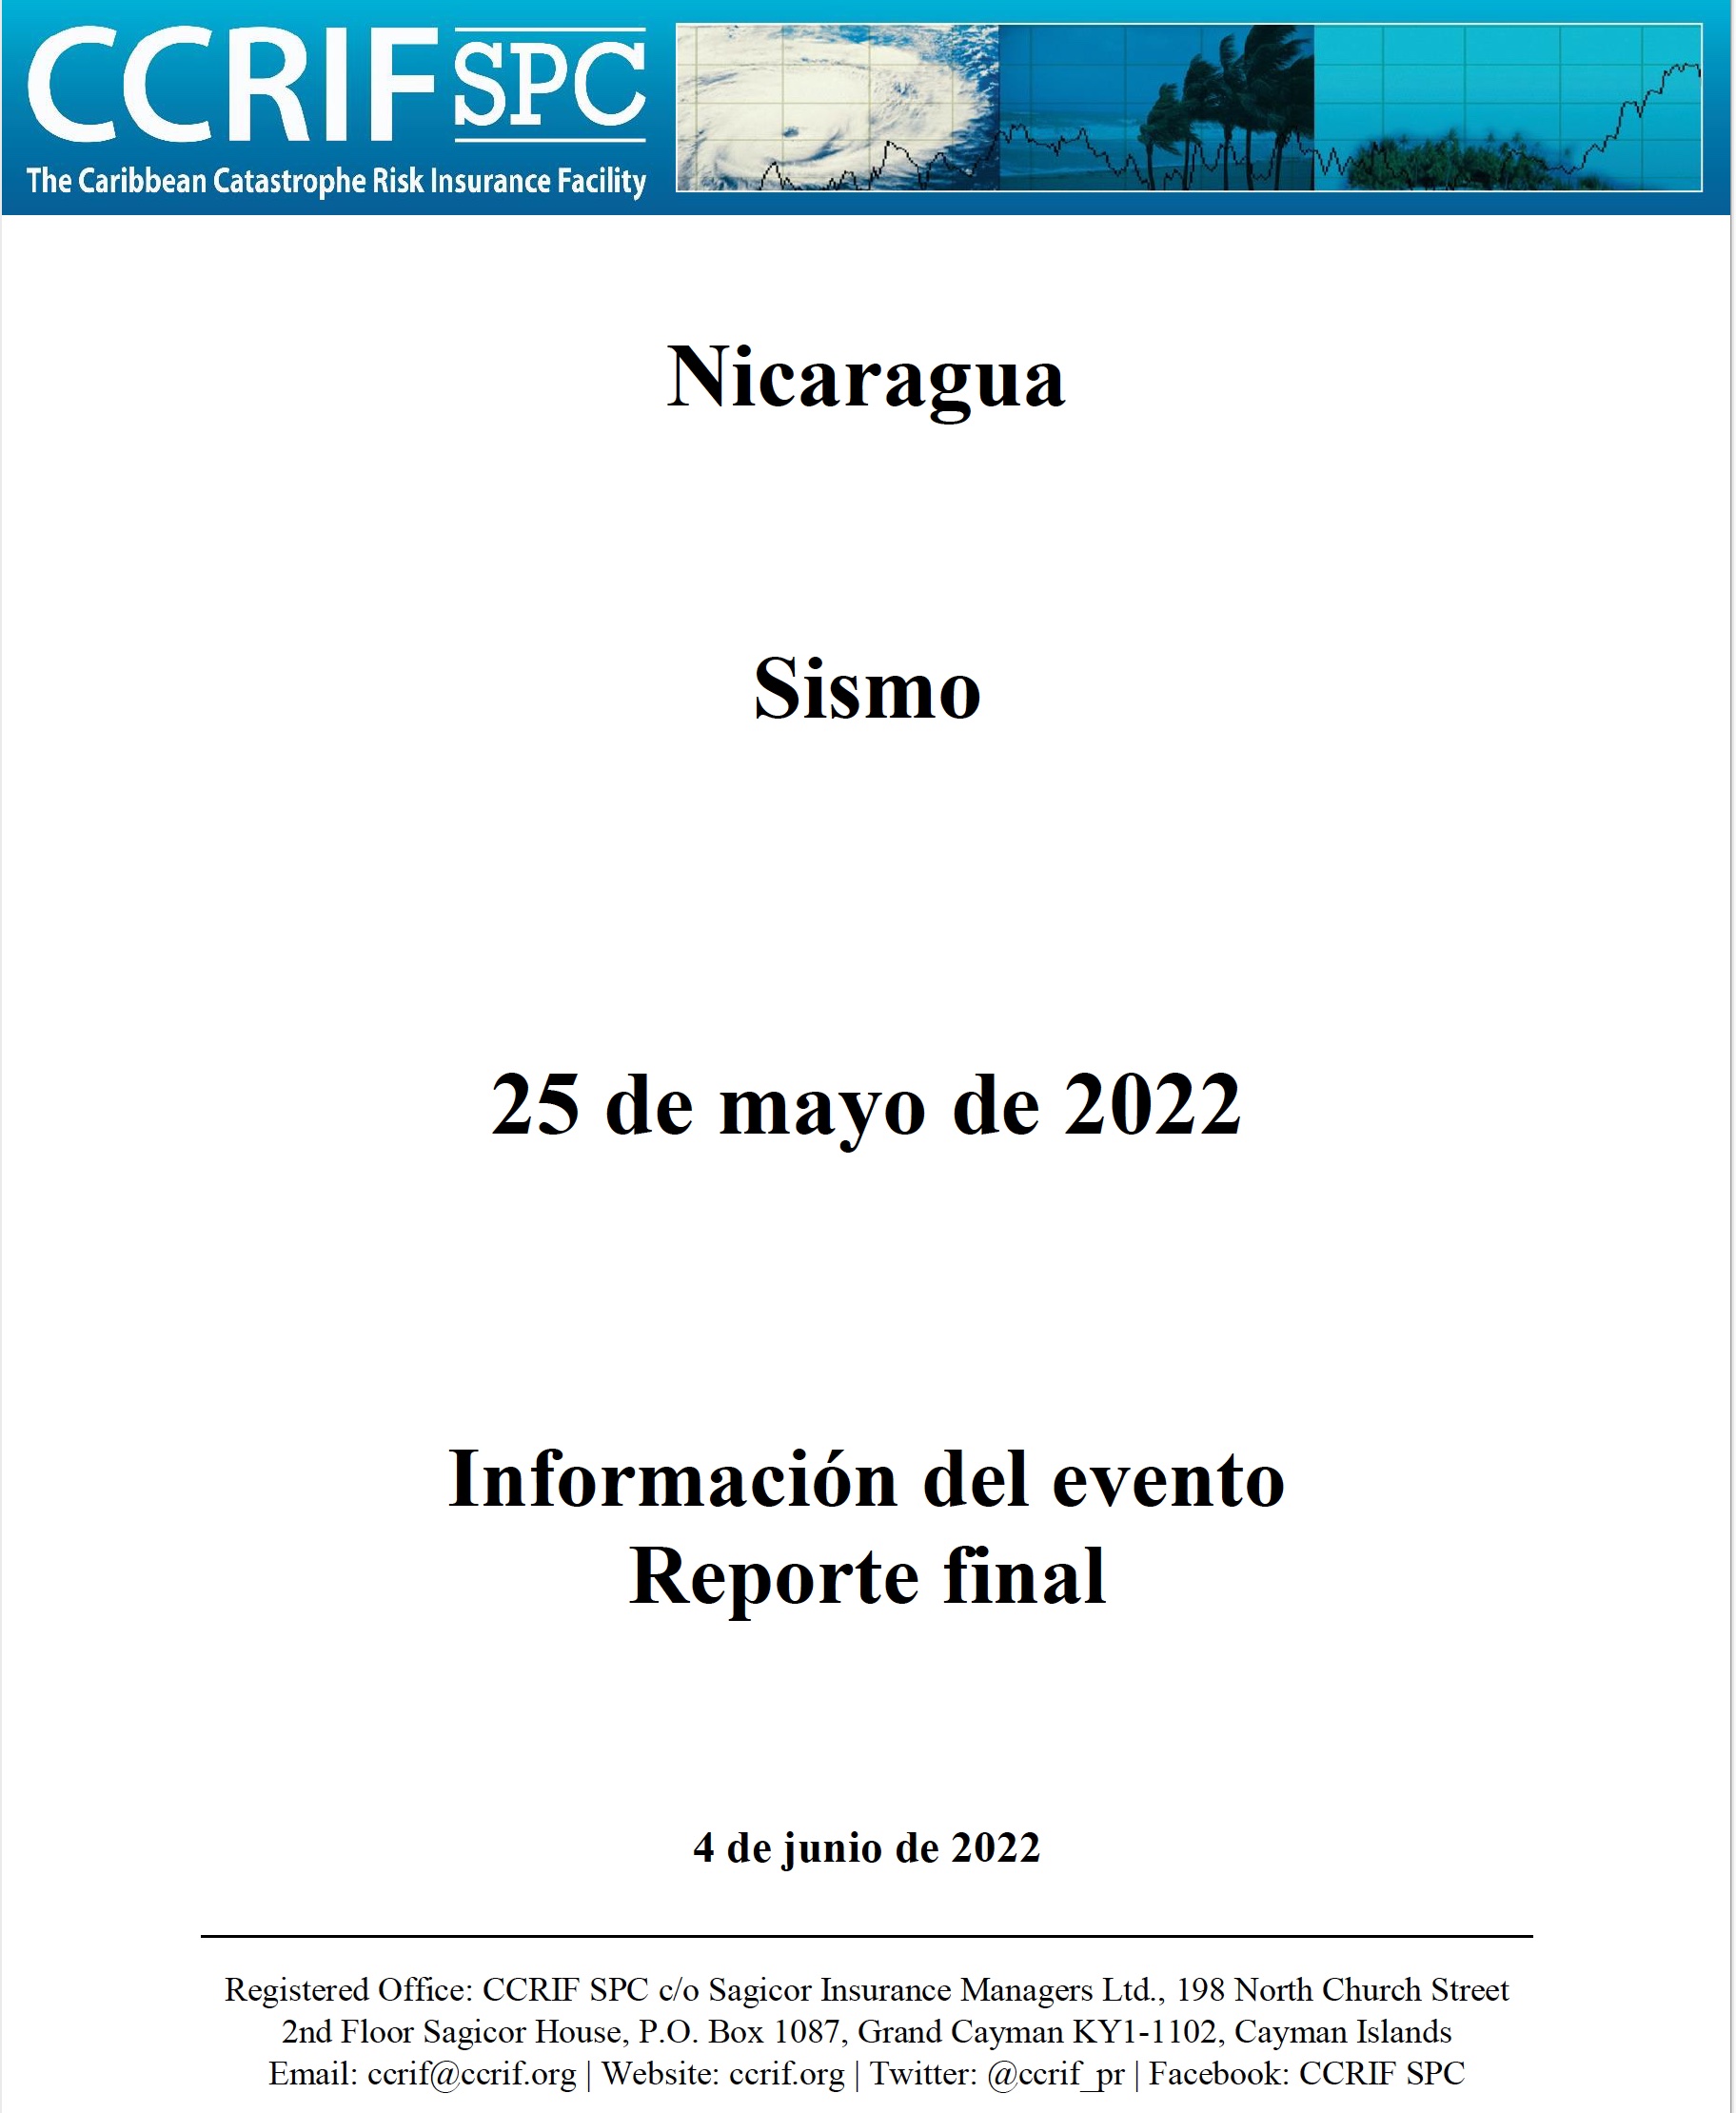 Información del evento Reporte final - Sismo - Nicaragua - 25 de mayo de 2022